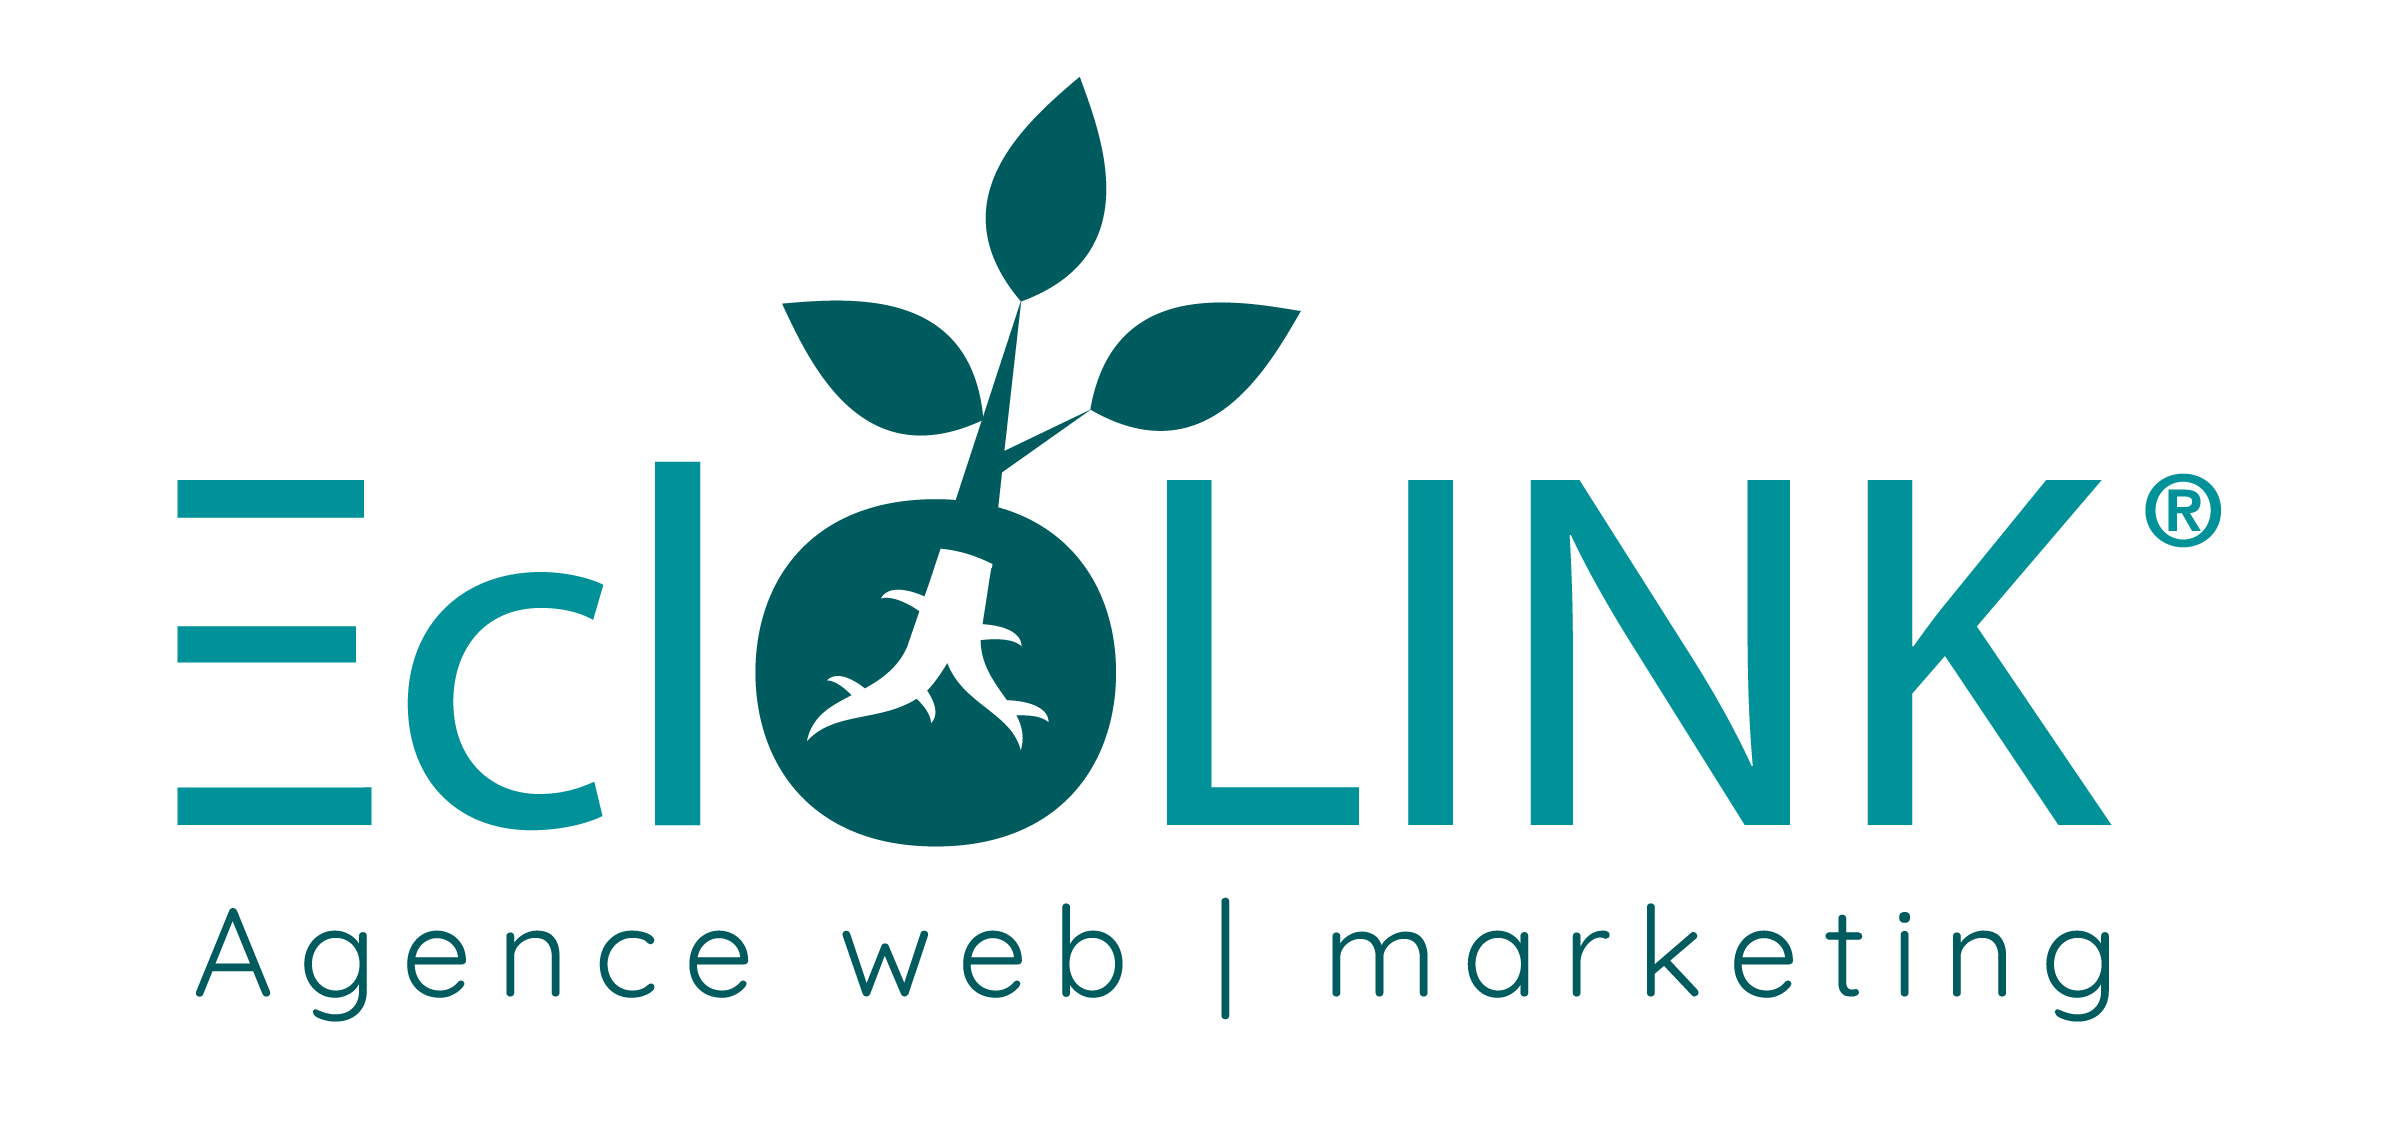 (c) Eclolink.com